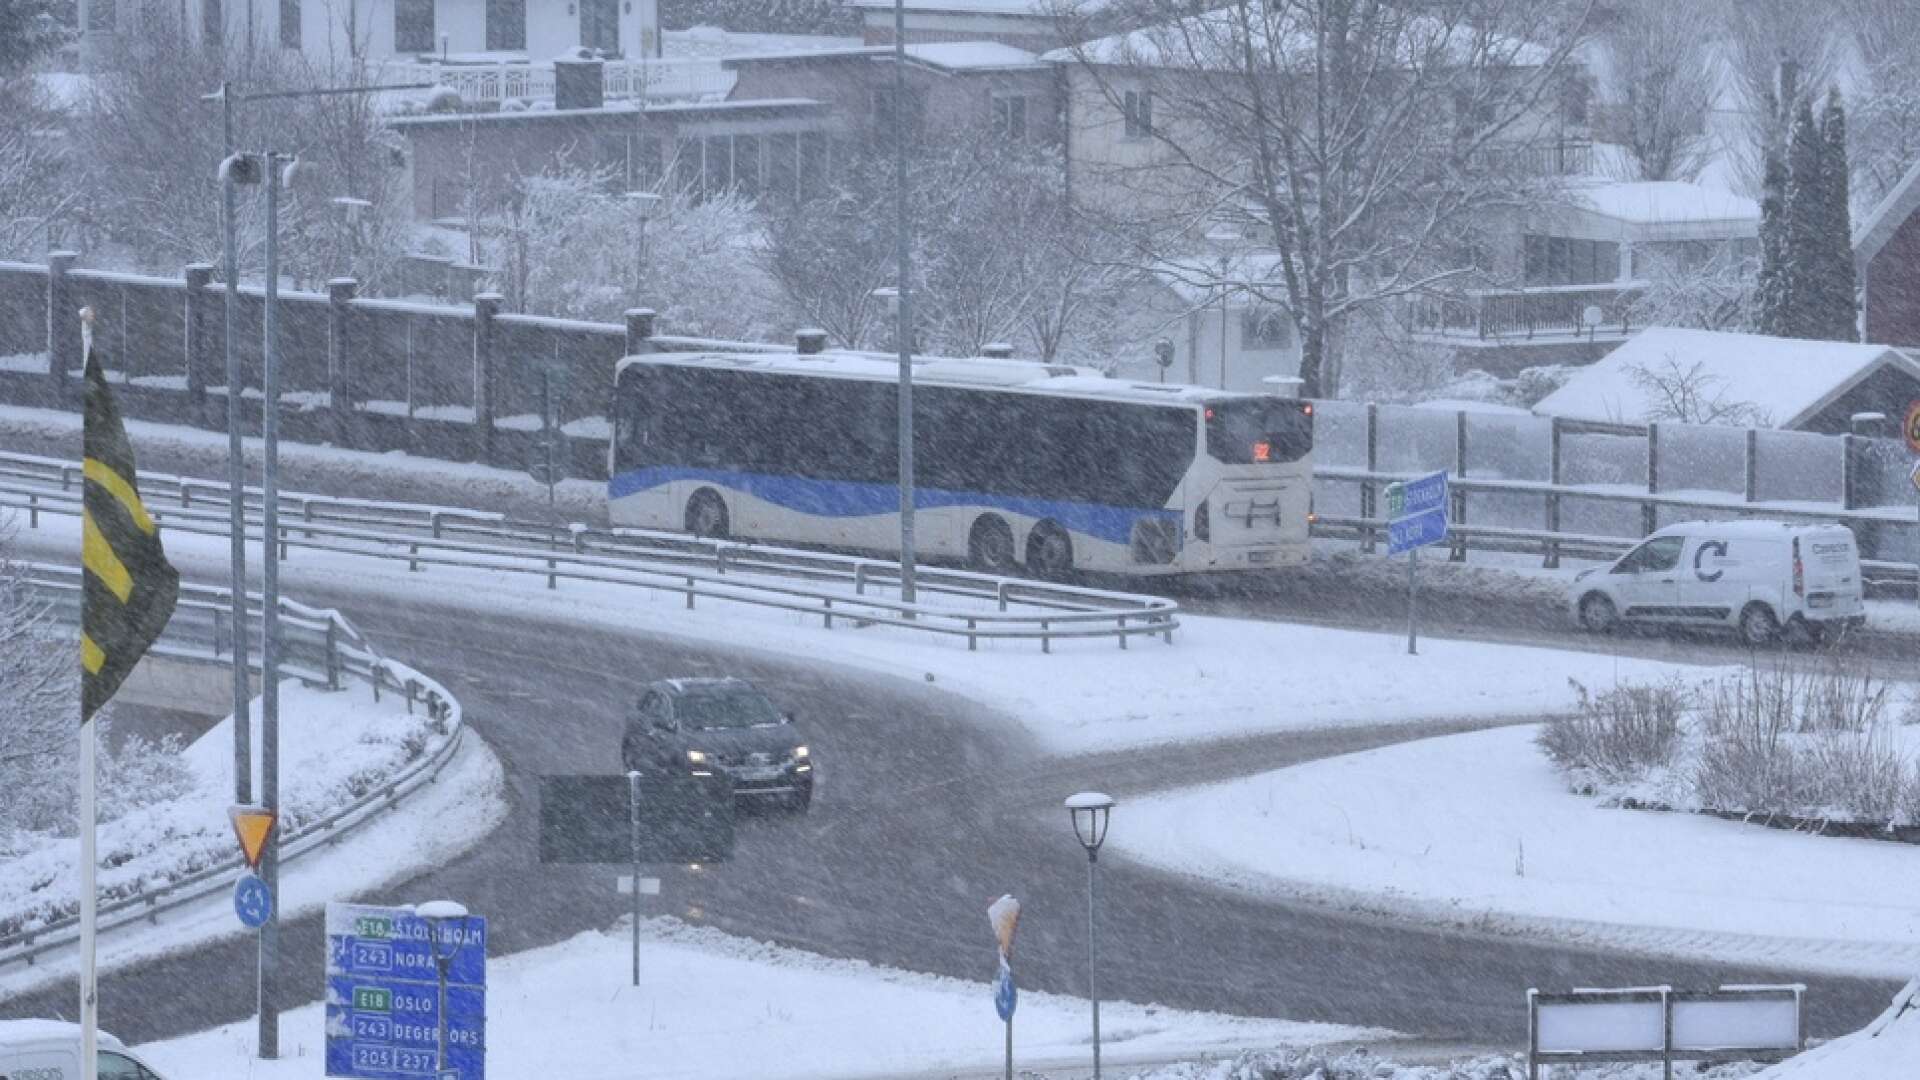 Vid 16:30-tiden på måndagen togs beslutet att ställa in Linje 500 mellan Karlskoga och Örebro.